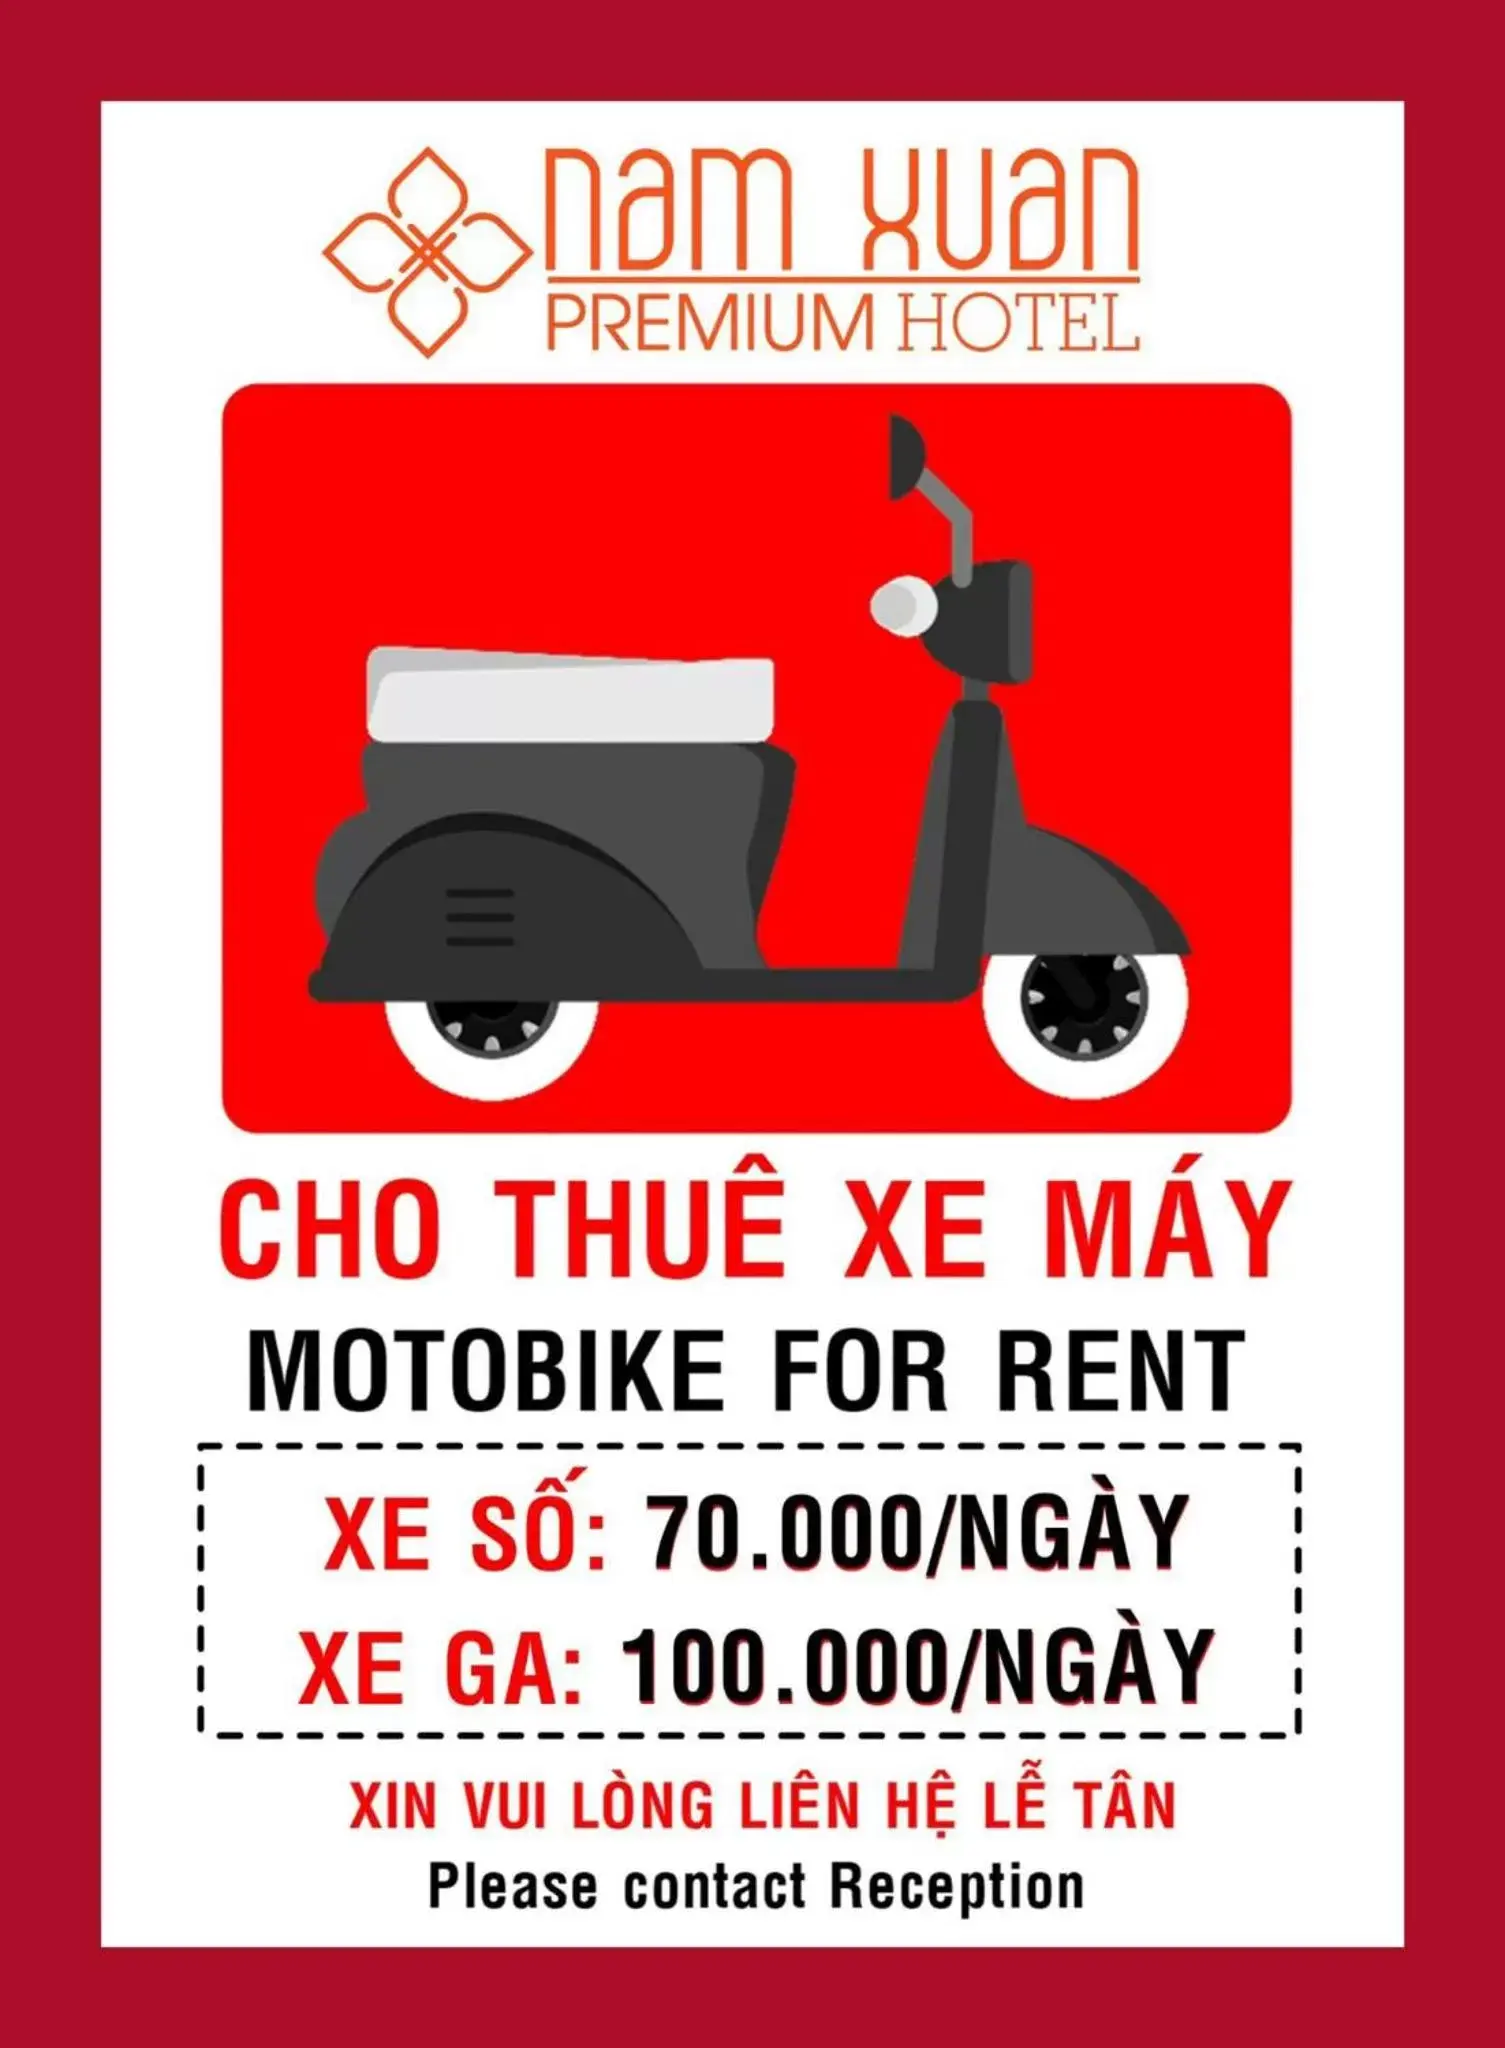 Area and facilities in Nam Xuan Premium Hotel